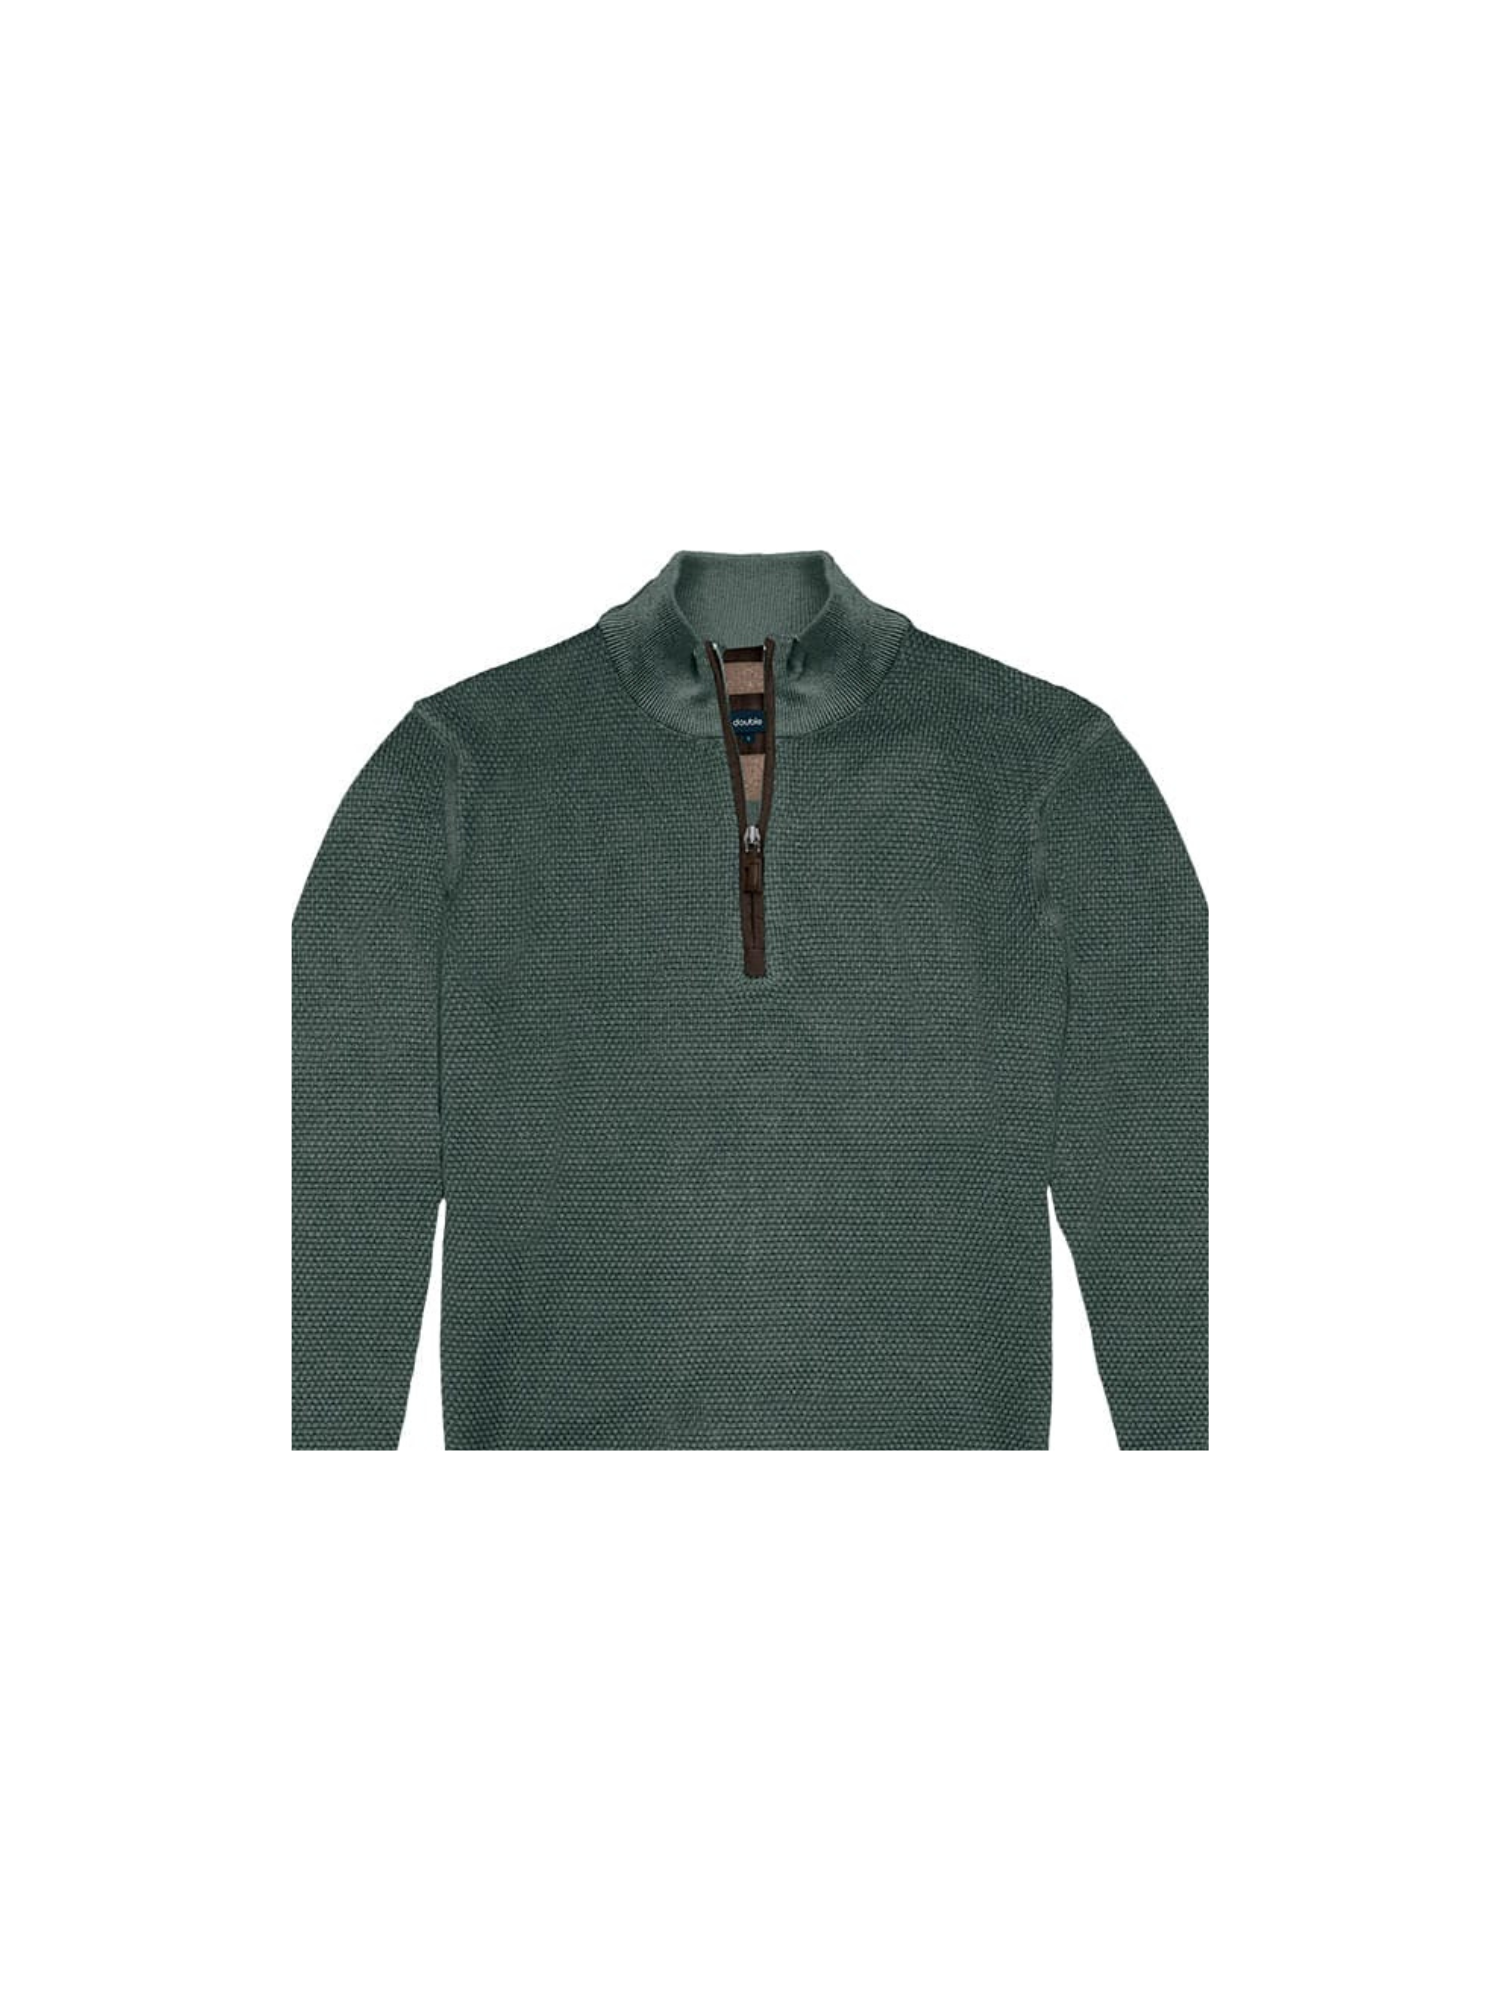 Ανδρική Μπλούζα Πλεκτή με Φερμουάρ Plus Size - Σκ. Πράσινο